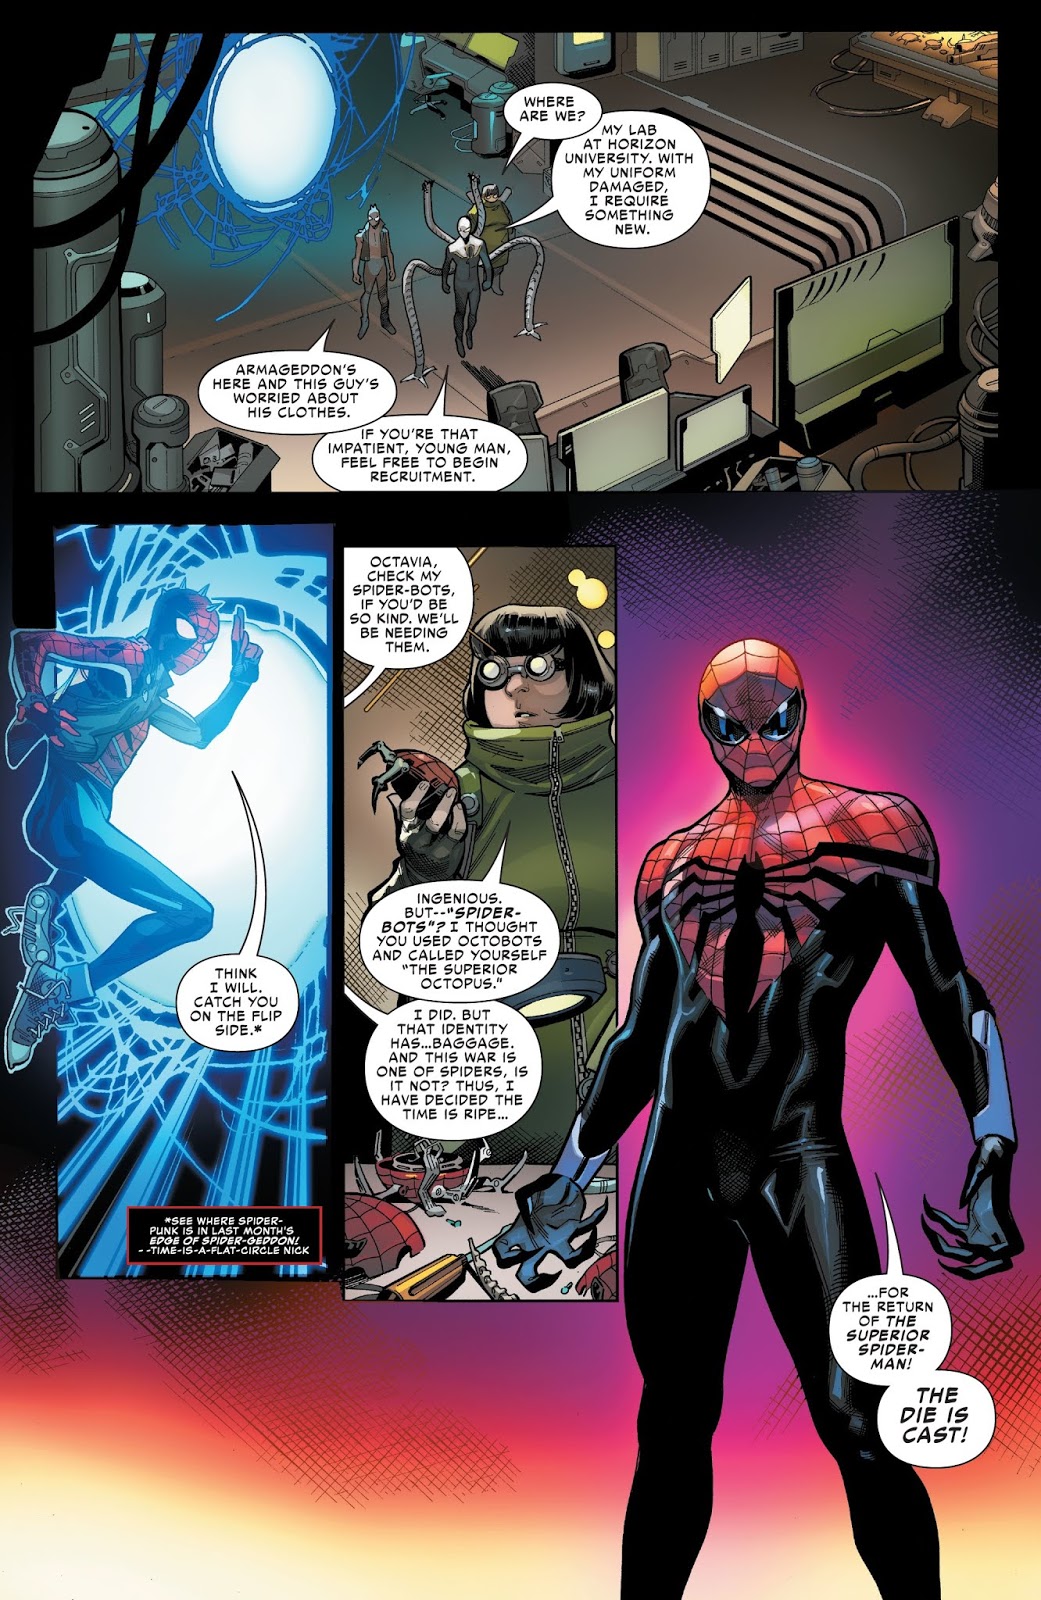 The Superior Spider-Man (Spider-Geddon #2)